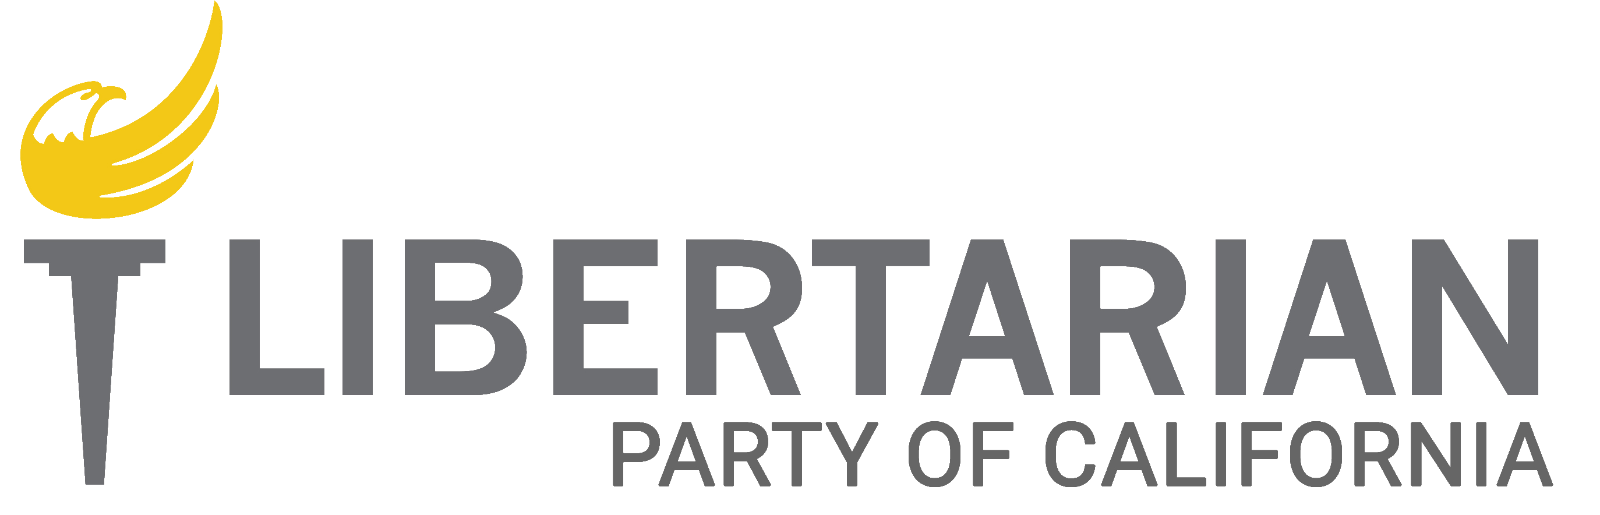 california-libertarian-party-logo.png